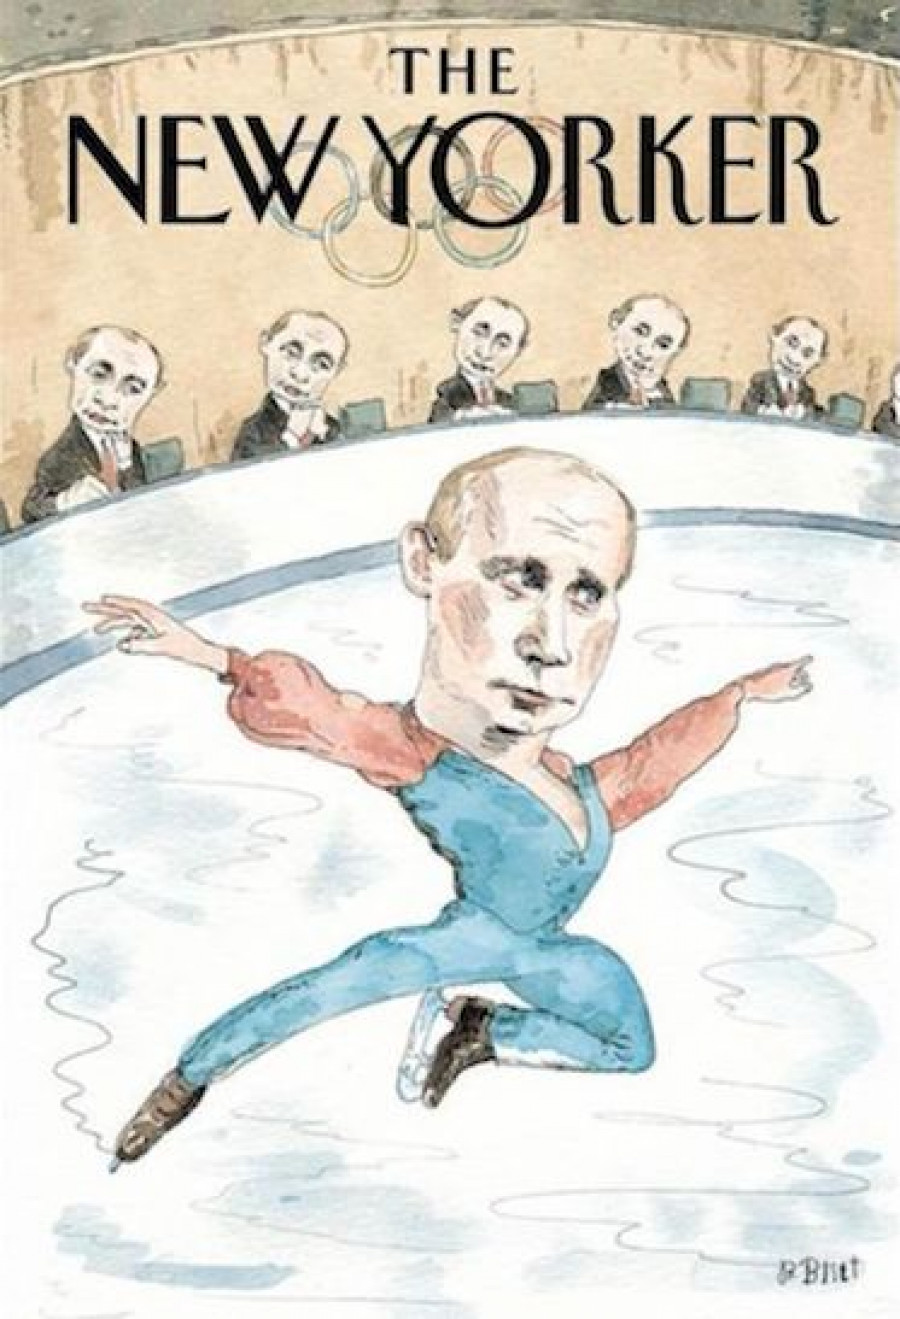 Владимир Путин на обложках западных  изданий.